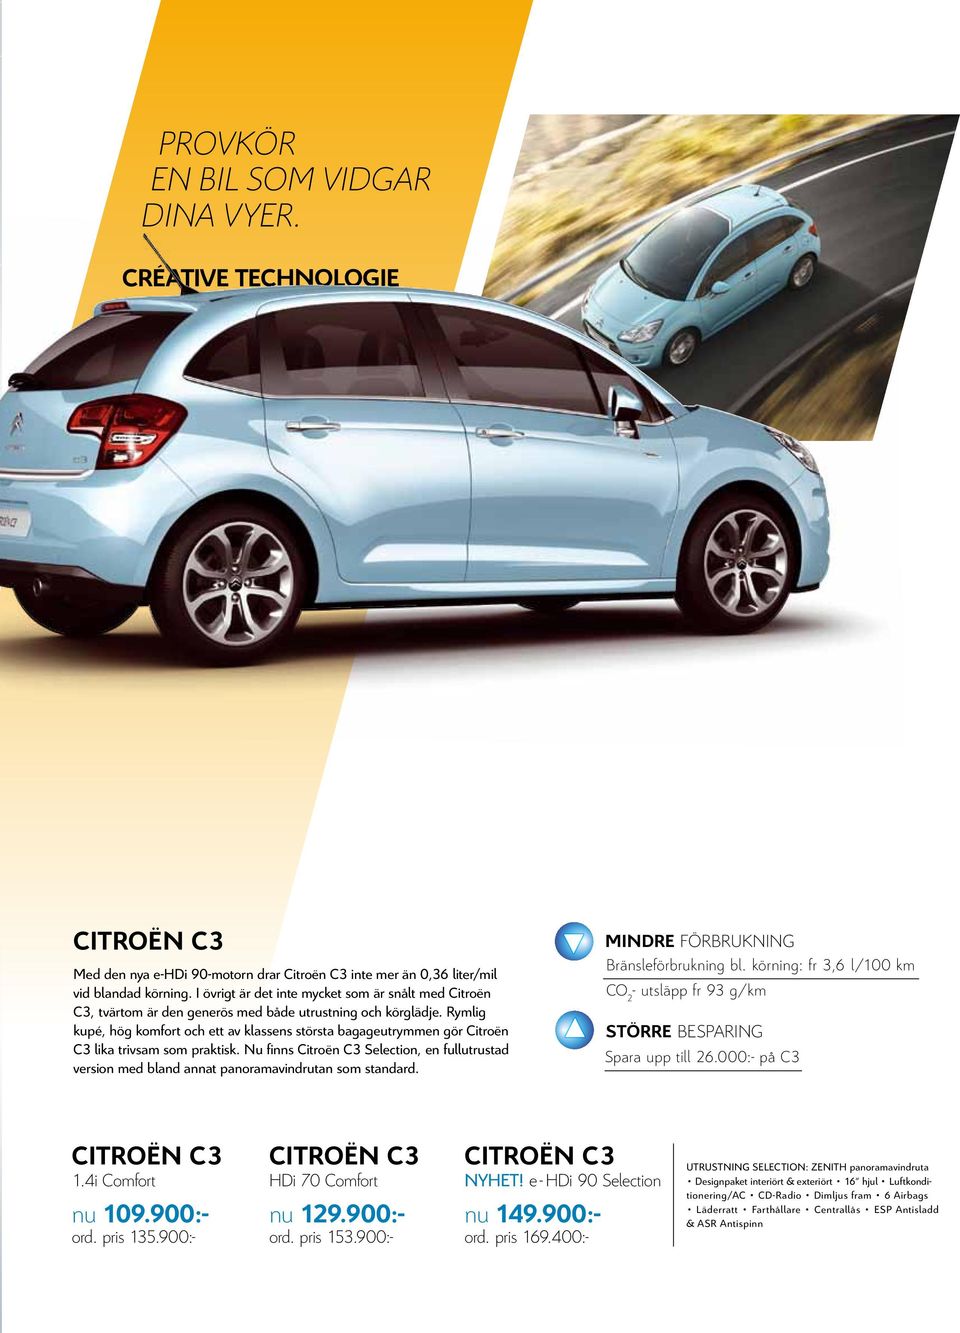 CITROËN C3 Med den nya e-hdi 90-motorn drar Citroën C3 inte mer än 0,36 liter/mil vid blandad körning.